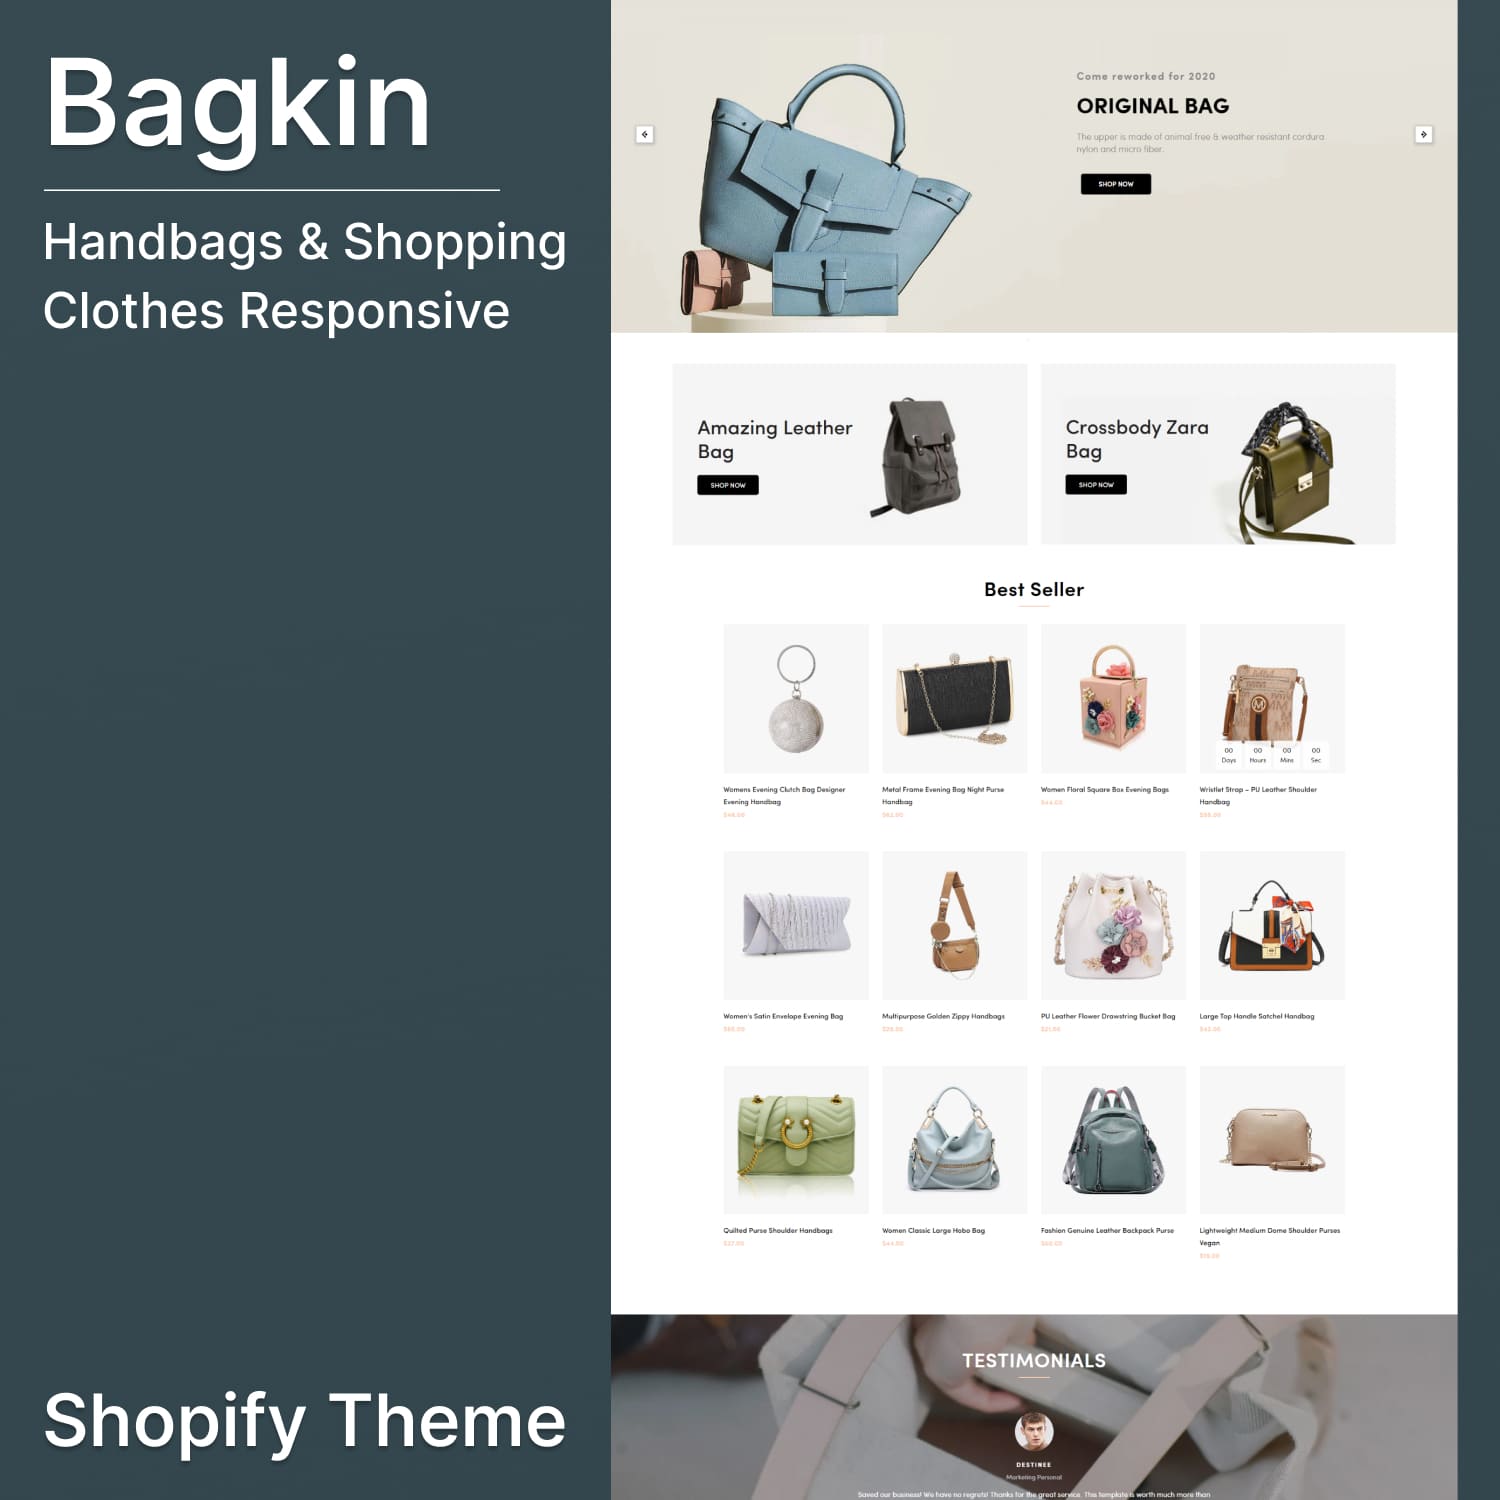 Bagkin handbags shopping clothes responsive shopify theme.